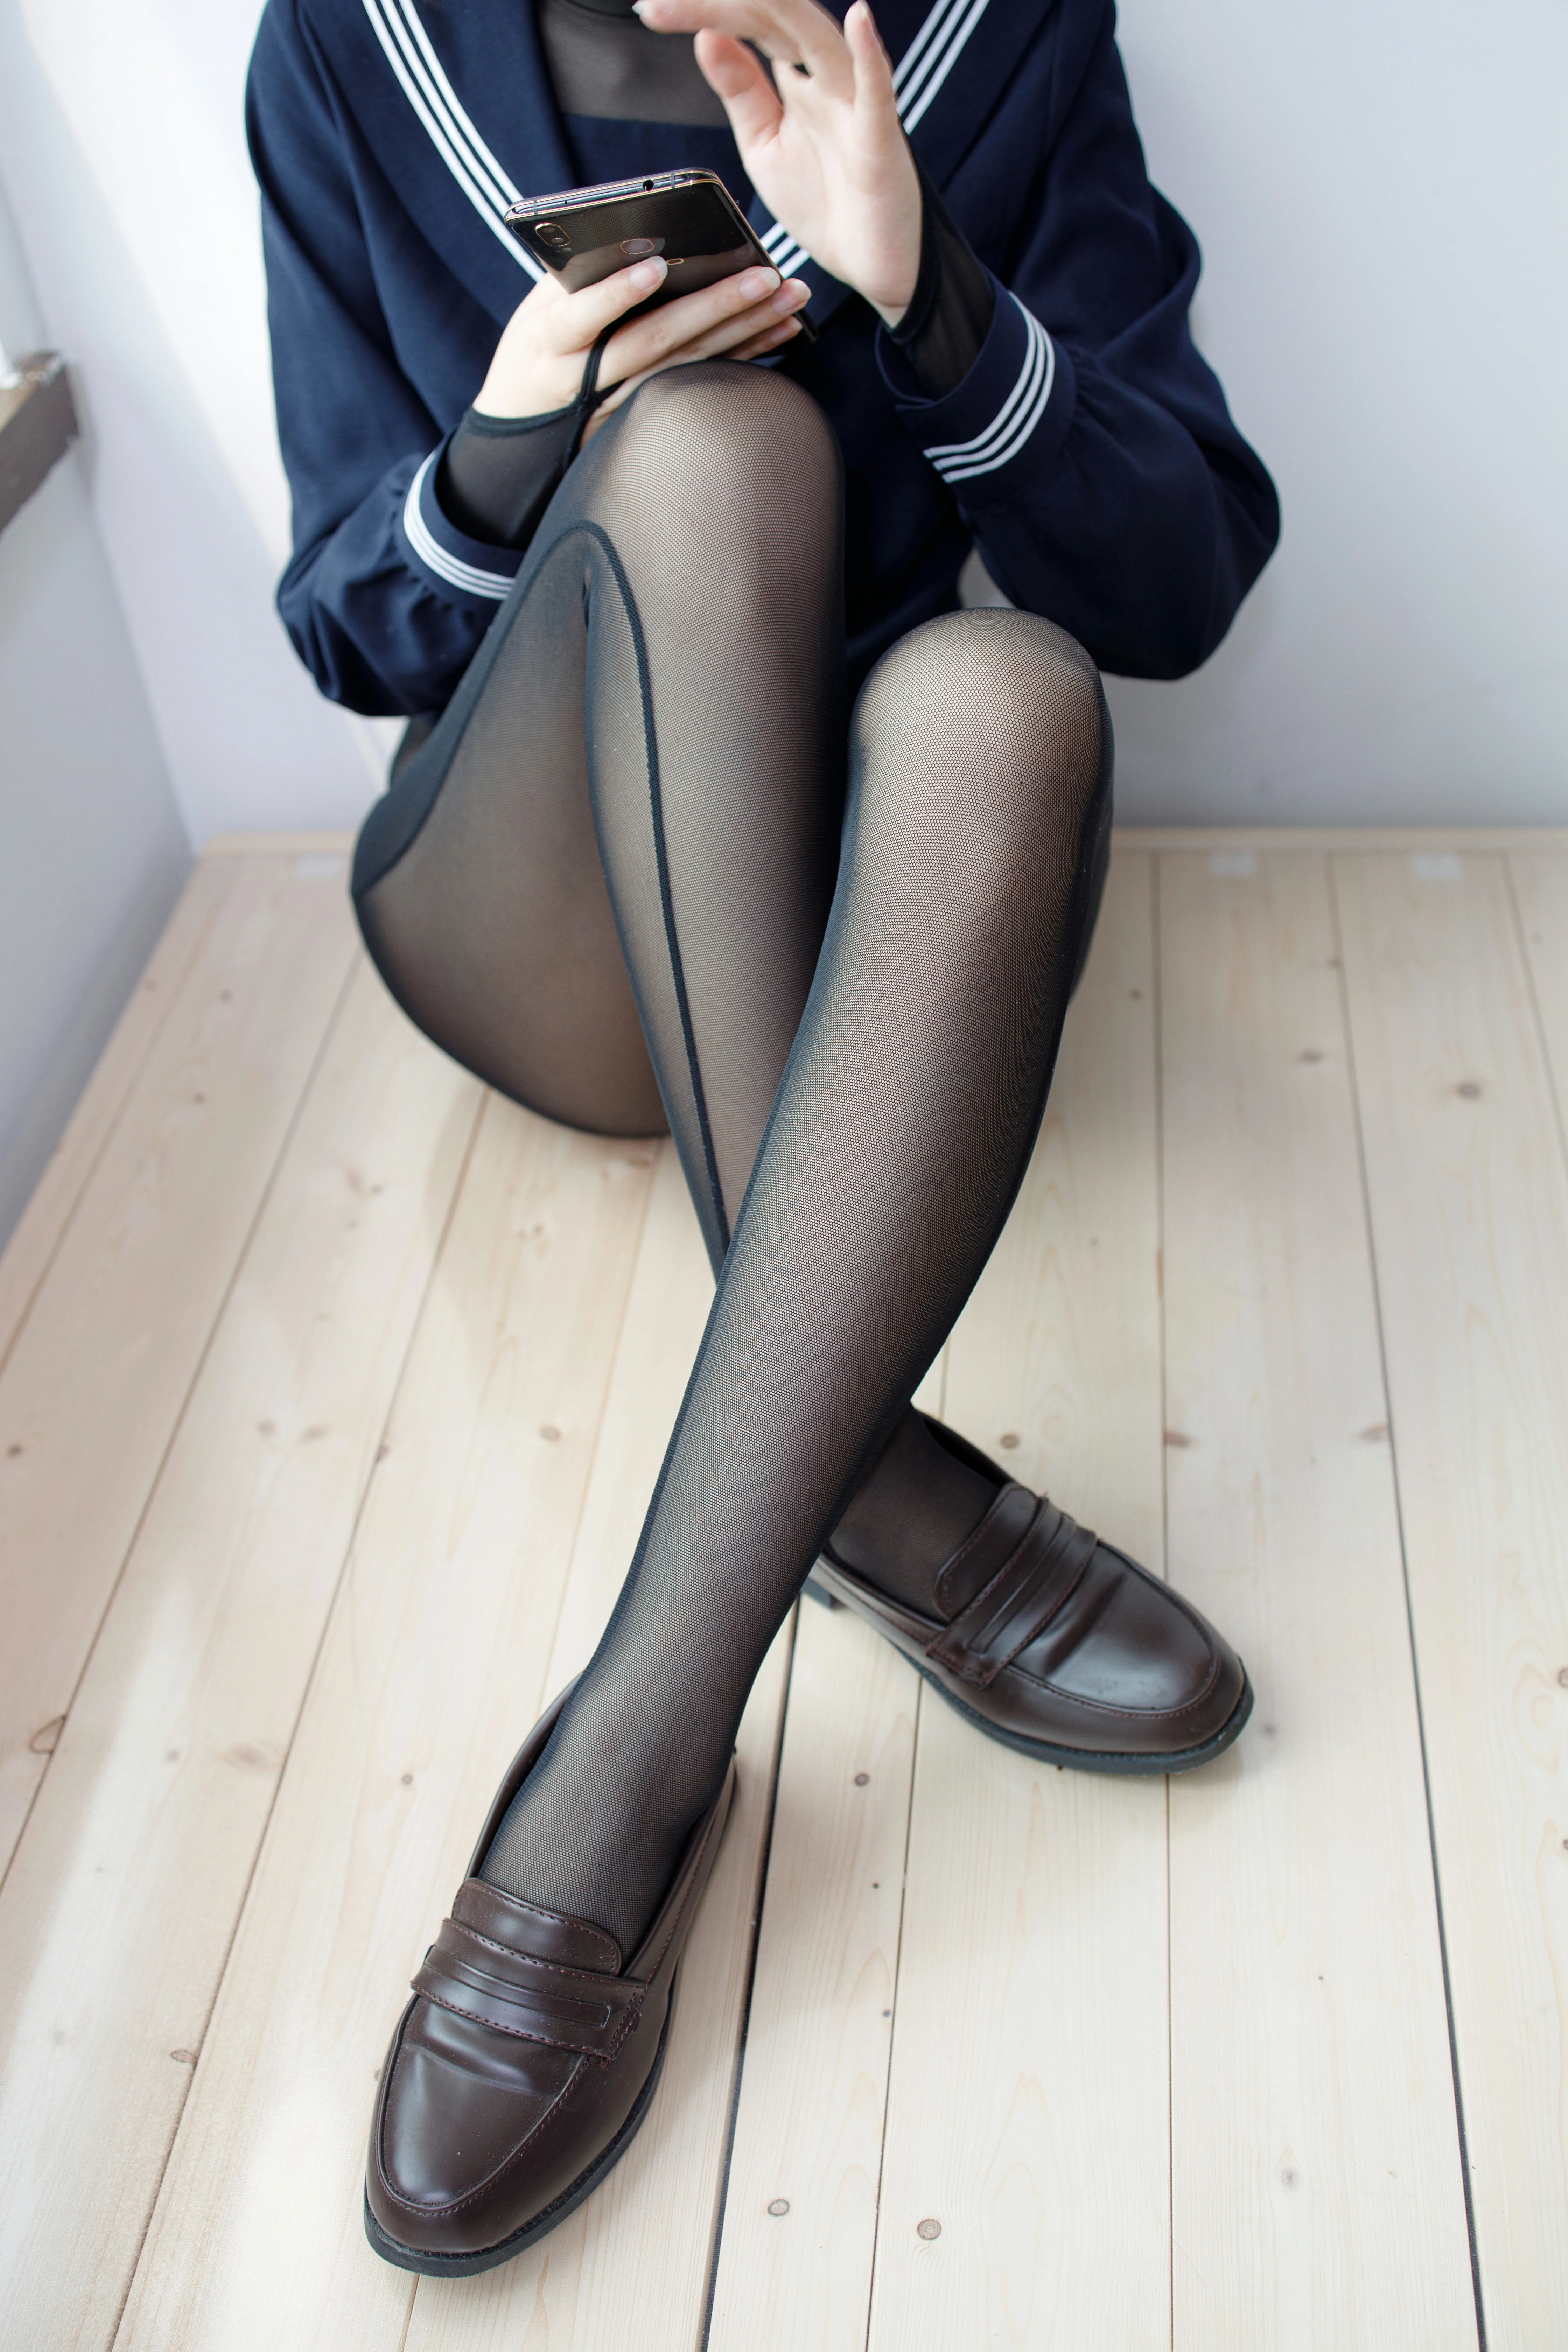 [森萝财团]WTMSB-003 性感小萝莉 蓝色高中女生制服加黑色丝袜美腿私房写真集,